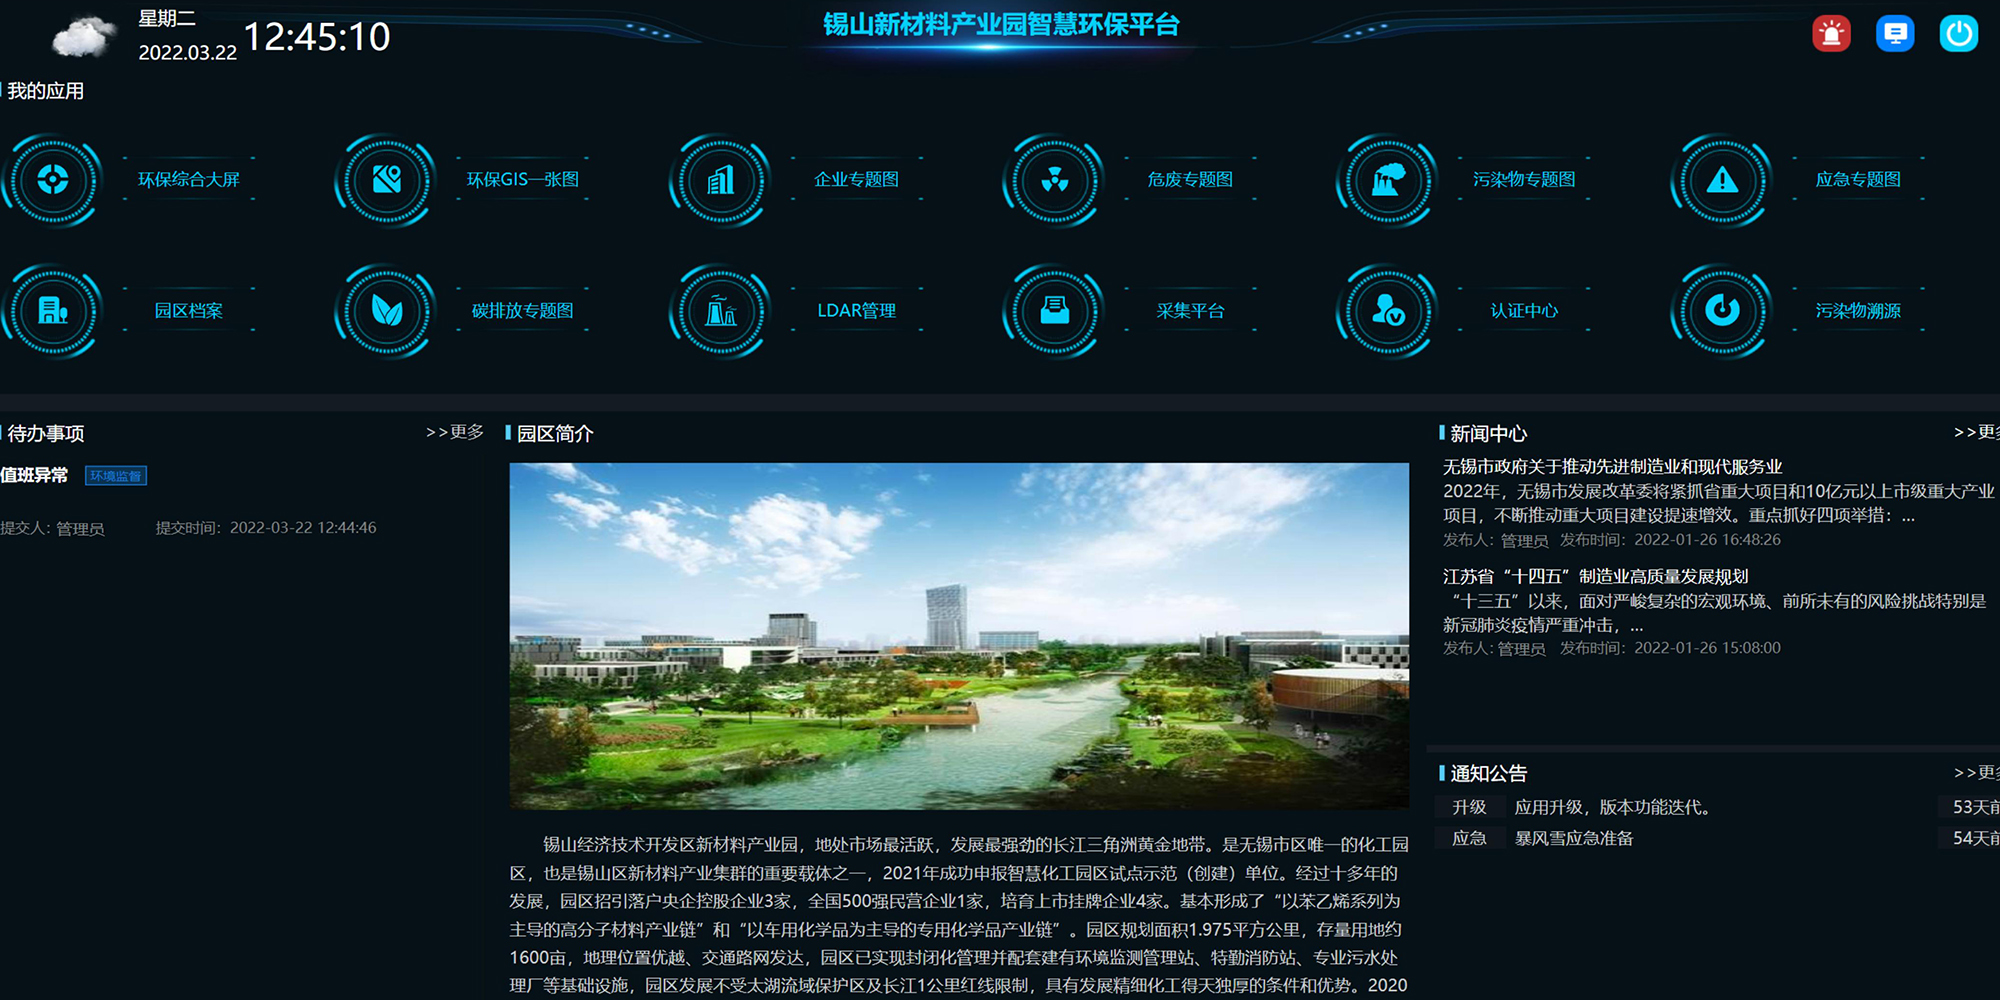 “江苏省化工园区生态管理信息系统建设及示范工程课题”顺利通过省级验收